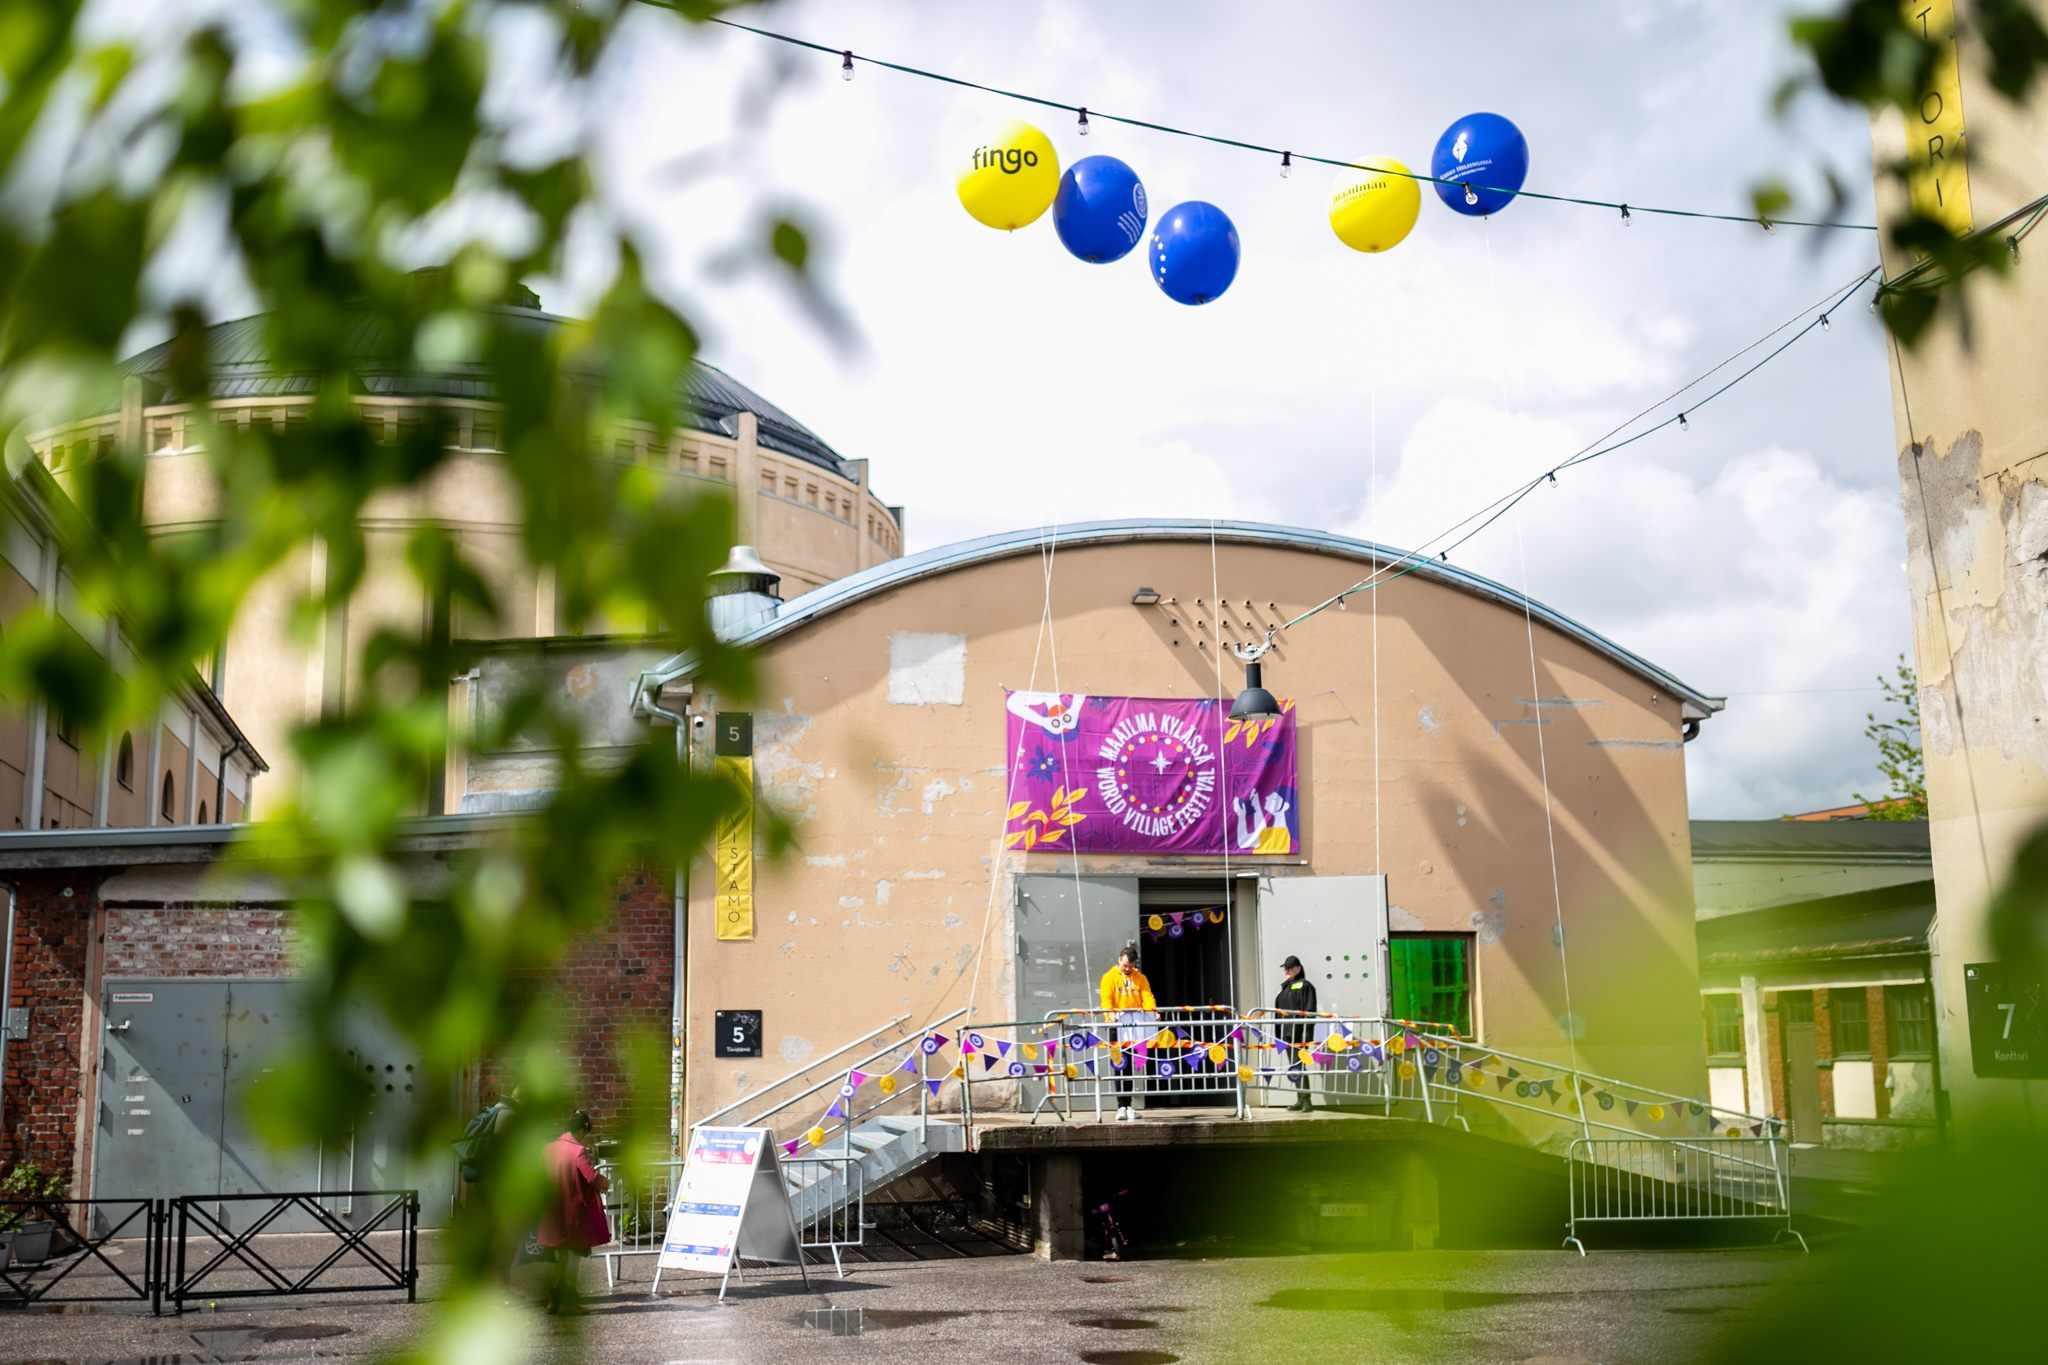 Tiivistämön sisäänkäynti ja Maailma kylässä -festivaalin banneri, sekä sinisiä ja keltaisia ilmapalloja.